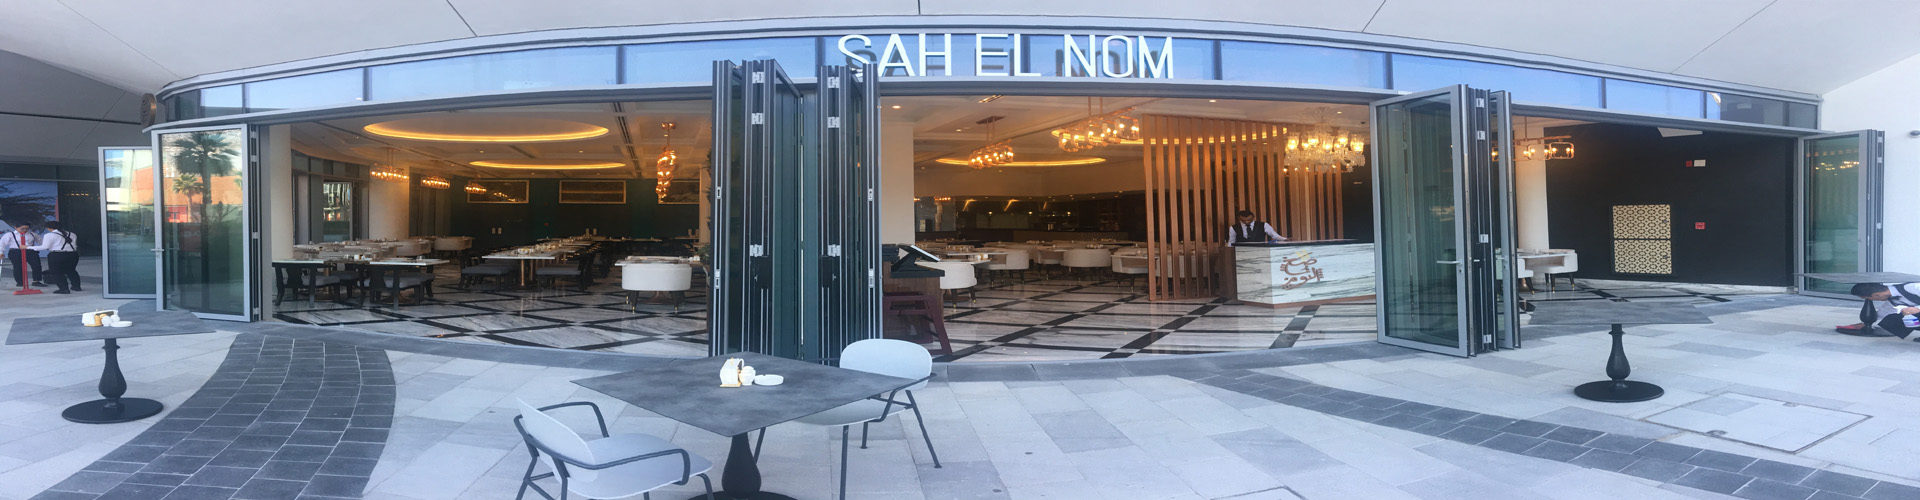 صح النوم - مطعم سوري، دمشقي | بلوواترز، دبي، الإمارات